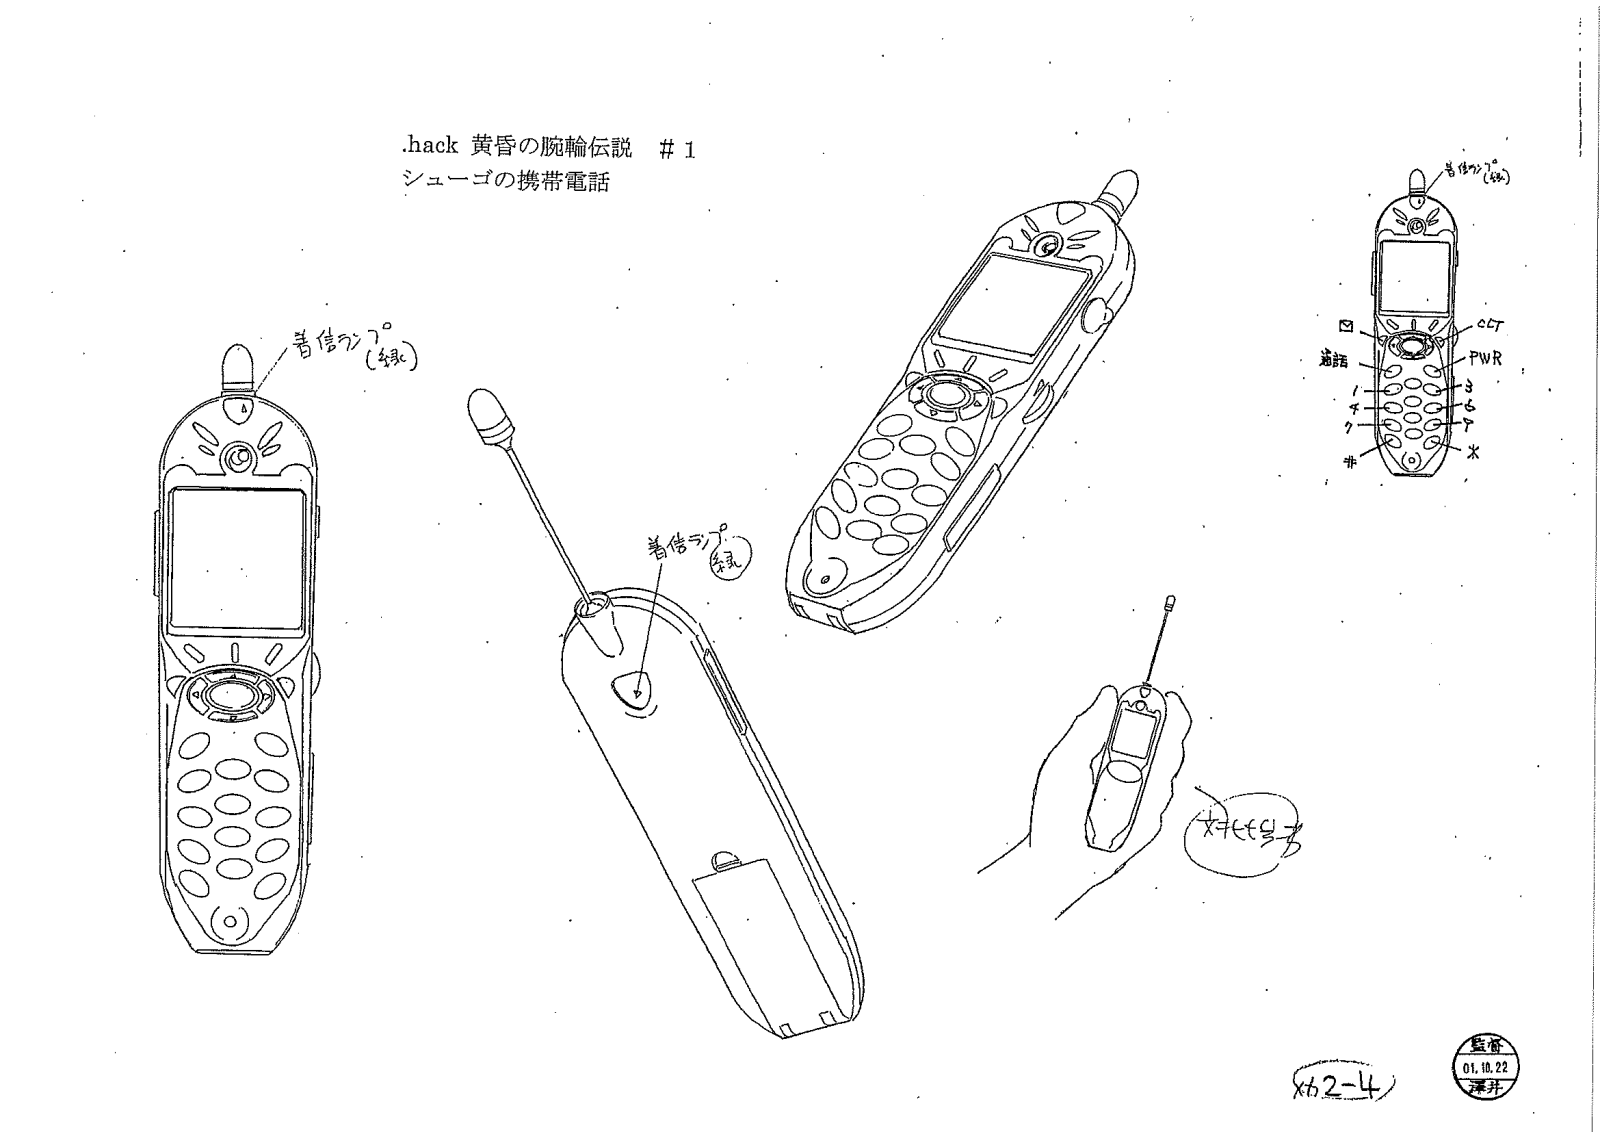 Shugo's Cellphone